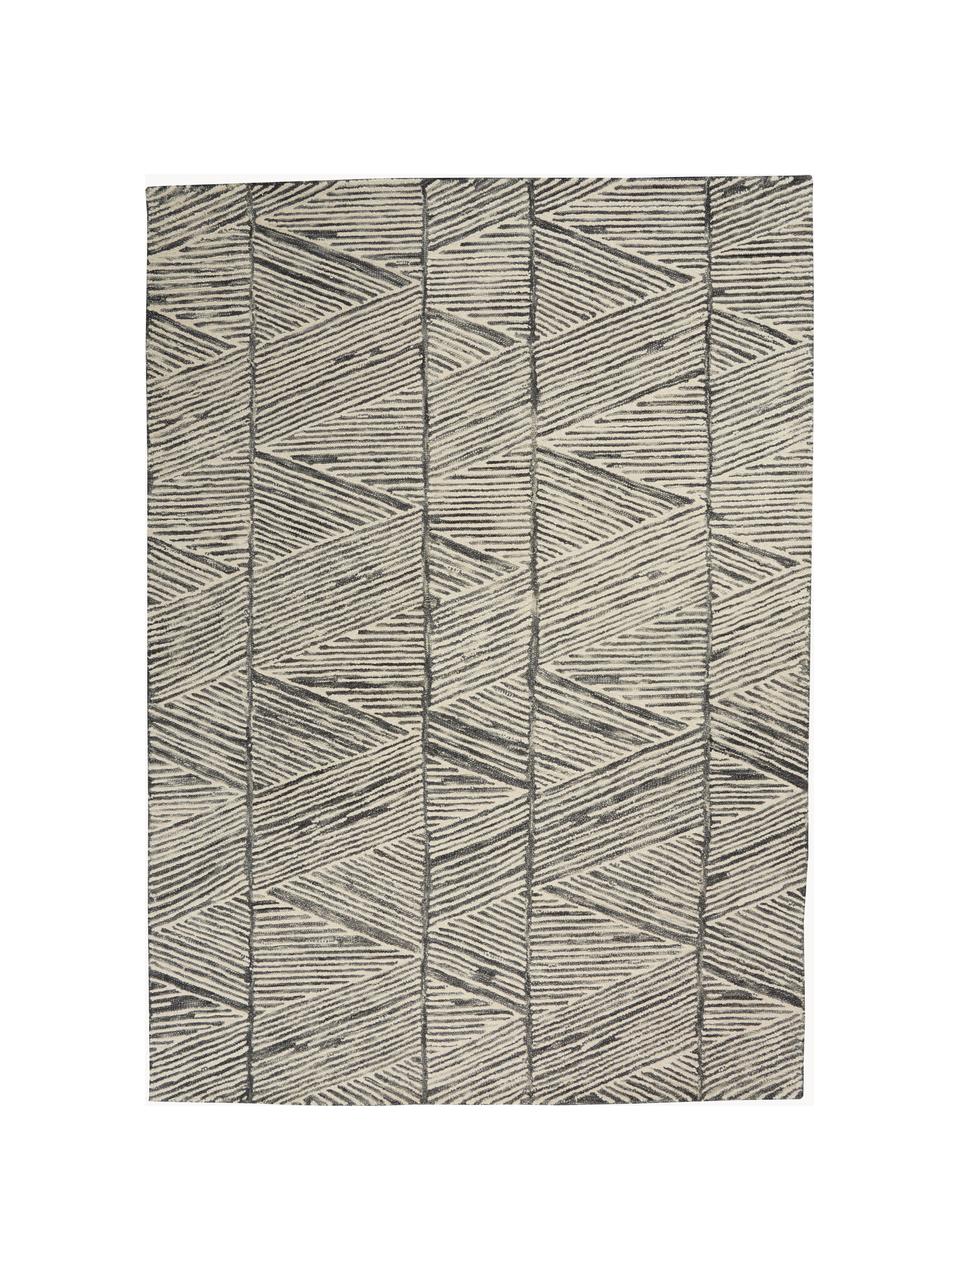 Ručne tkaný vlnený koberec Colorado, 100 % vlna
V prvých týždňoch používania môžu vlnené koberce uvoľňovať vlákna, tento jav zmizne po niekoľkých týždňoch používania, Krémovobiela, tmavosivá, Š 120 x D 180 cm (veľkosť S)